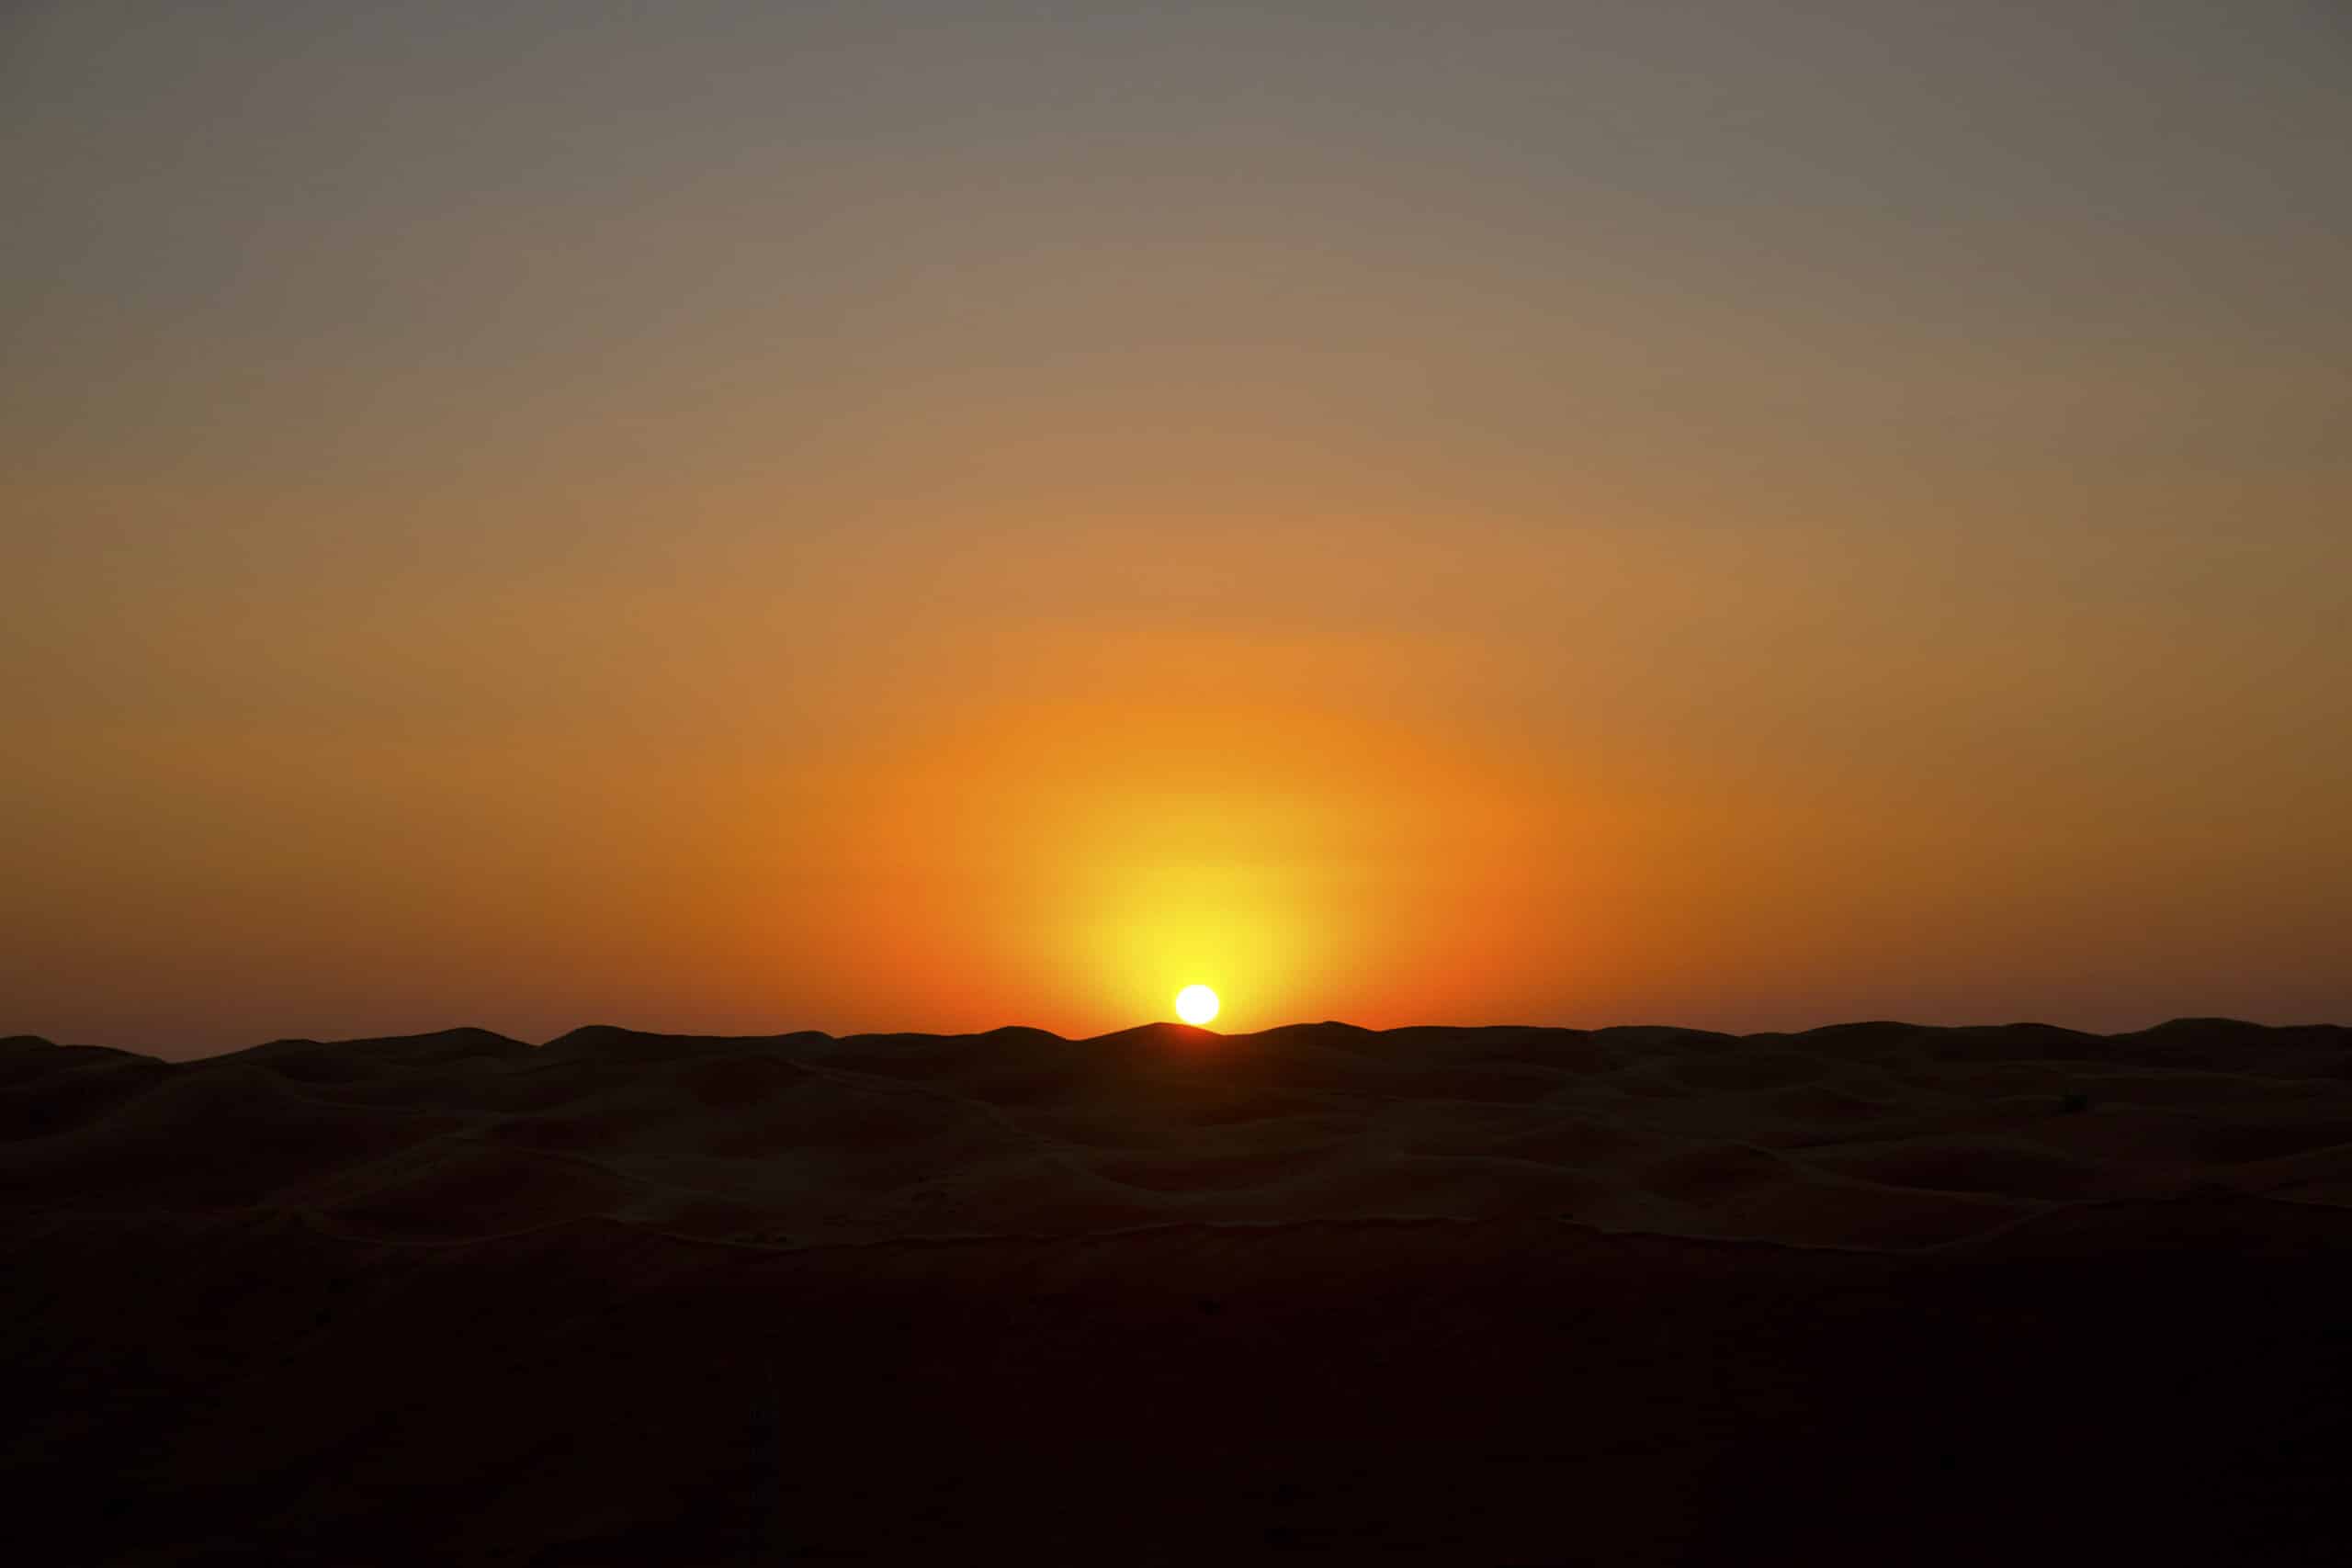 Ein ruhiger Sonnenuntergang in der Wüste, bei dem die Sonne teilweise hinter dem Horizont verschwindet und einen warmen orangefarbenen Schein über die glatten, welligen Sanddünen wirft. © Fotografie Tomas Rodriguez